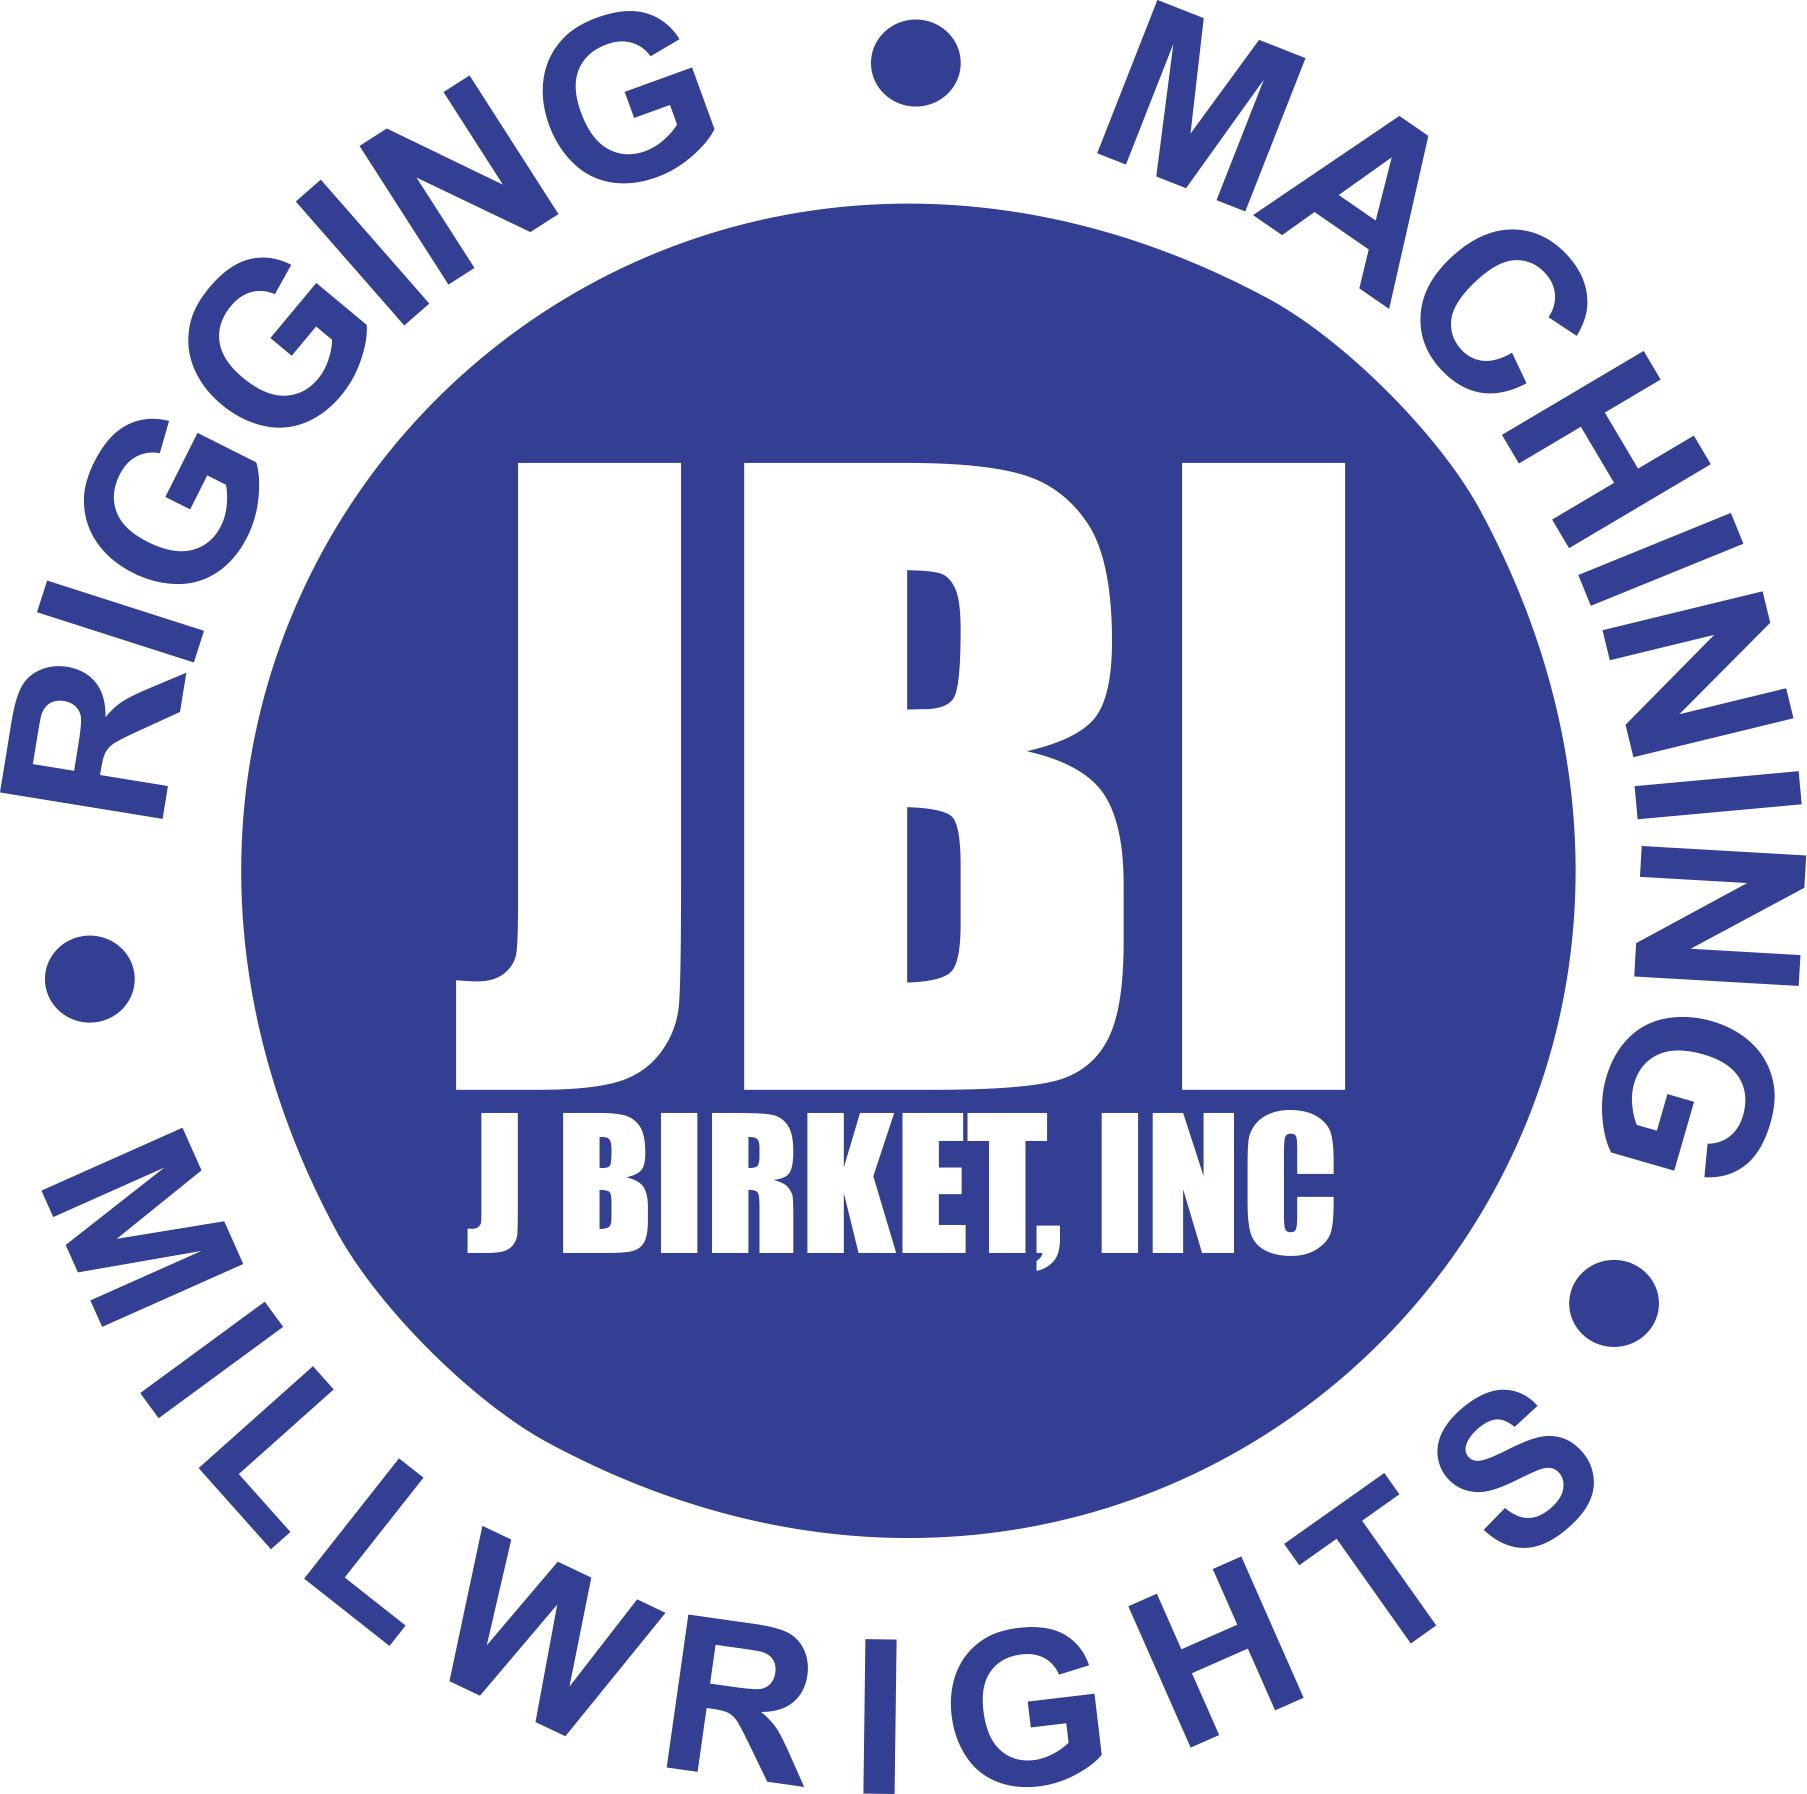 JBI logo